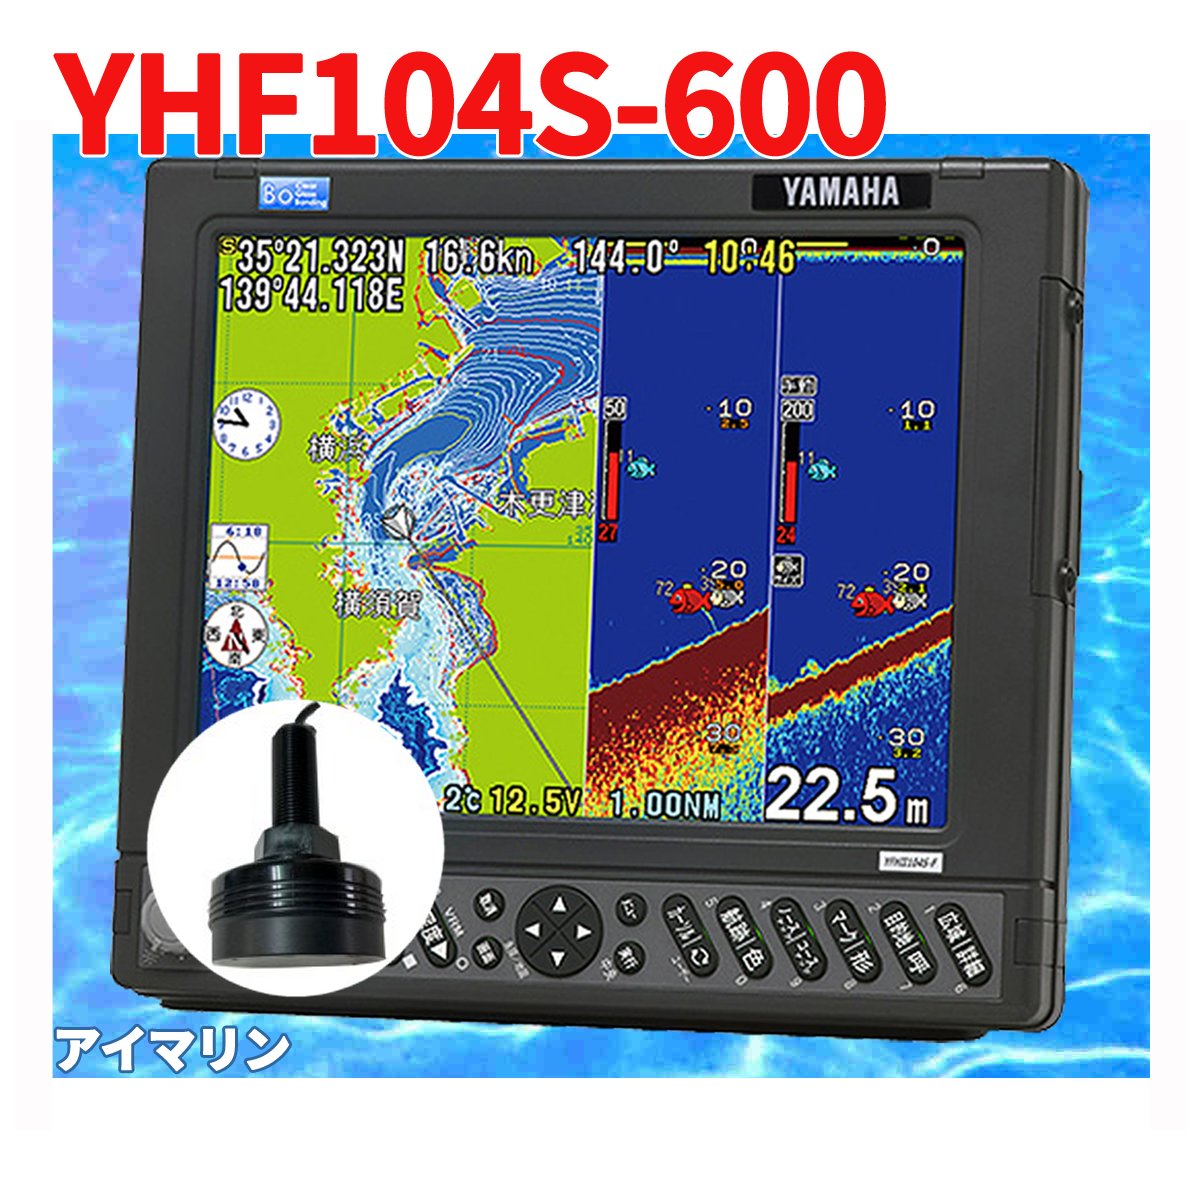 5/13 在庫あり YFHII-104S-F66i 600w TD28g 振動子付き HE-731S の ヤマハブランド YFH2-104 魚探 アンテナ内蔵 HONDEX ホンデックス